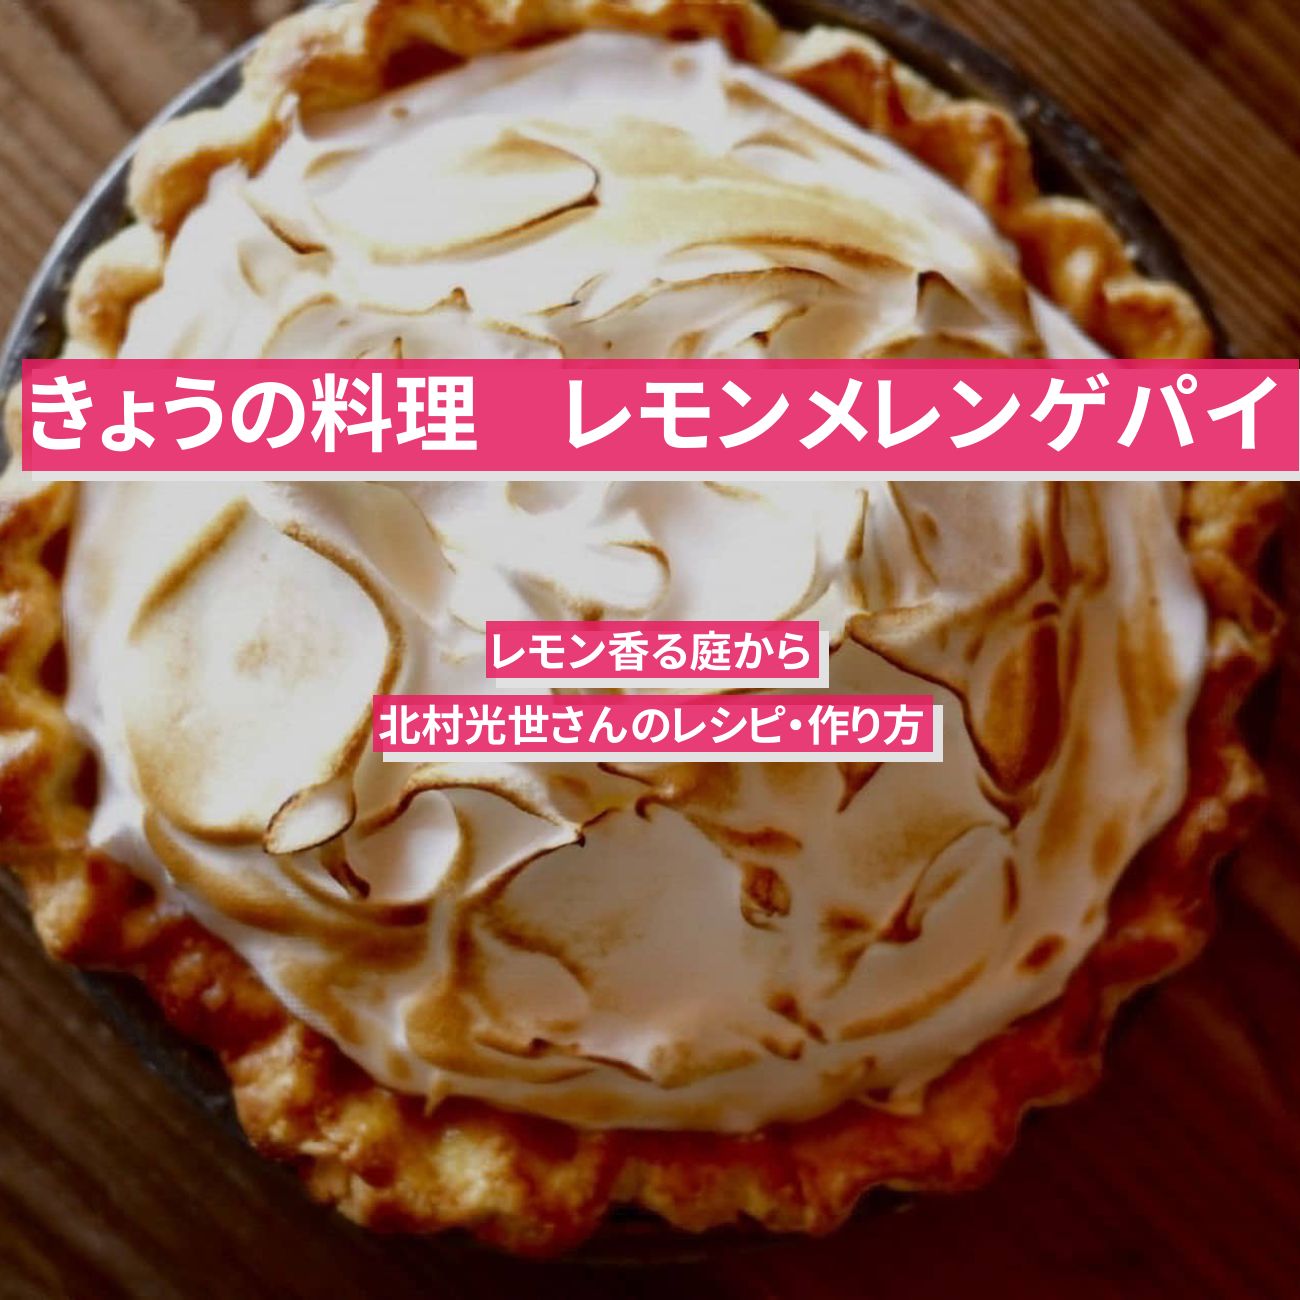 【きょうの料理】『レモンメレンゲパイ』北村光世さんのレシピ・作り方